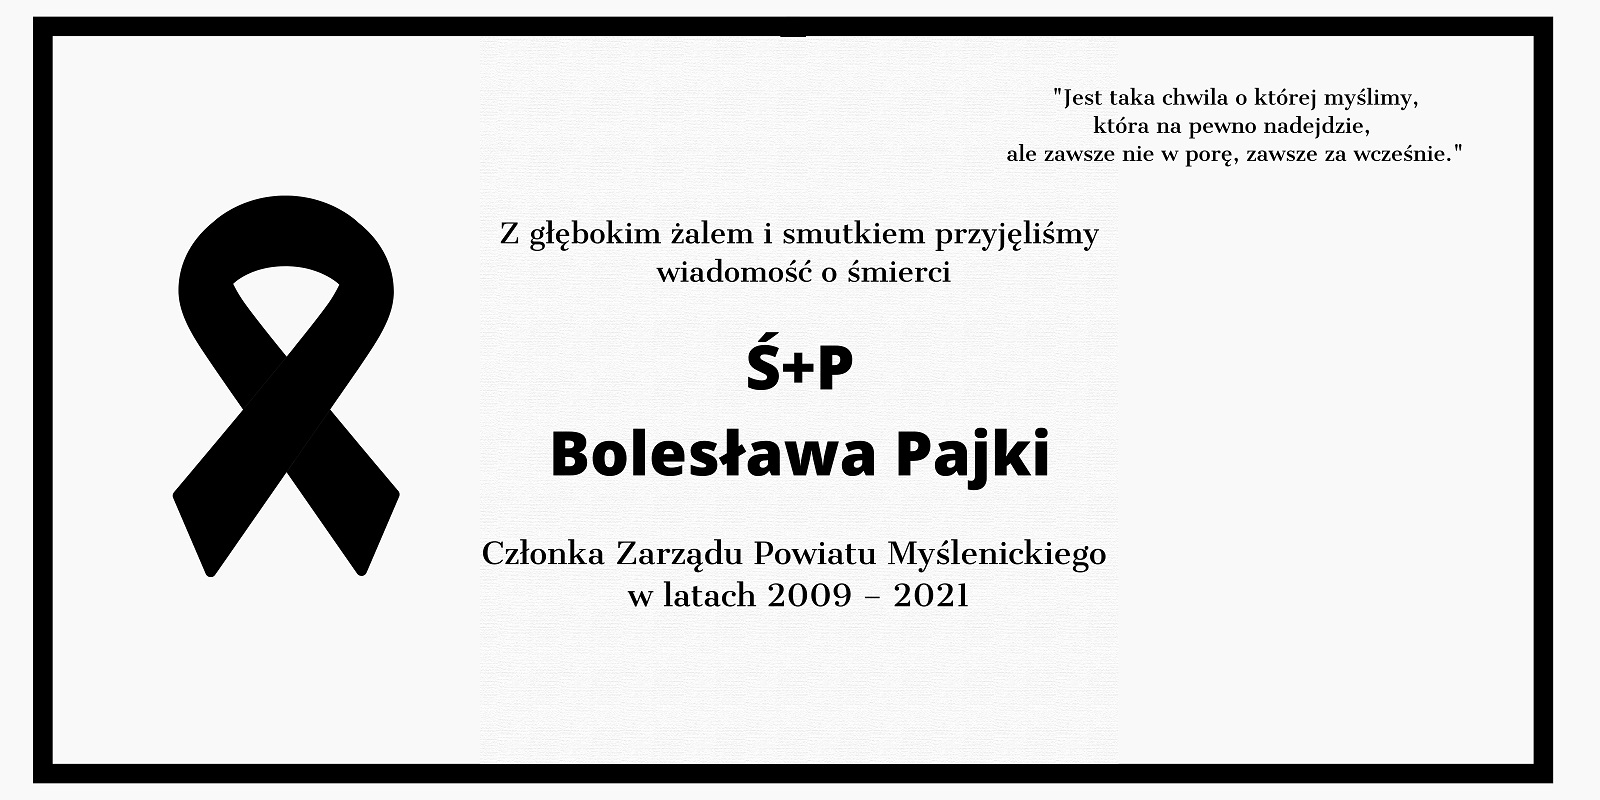 Zmarł Bolesław Pajka - Członek Zarządu Powiatu Myślenickiego